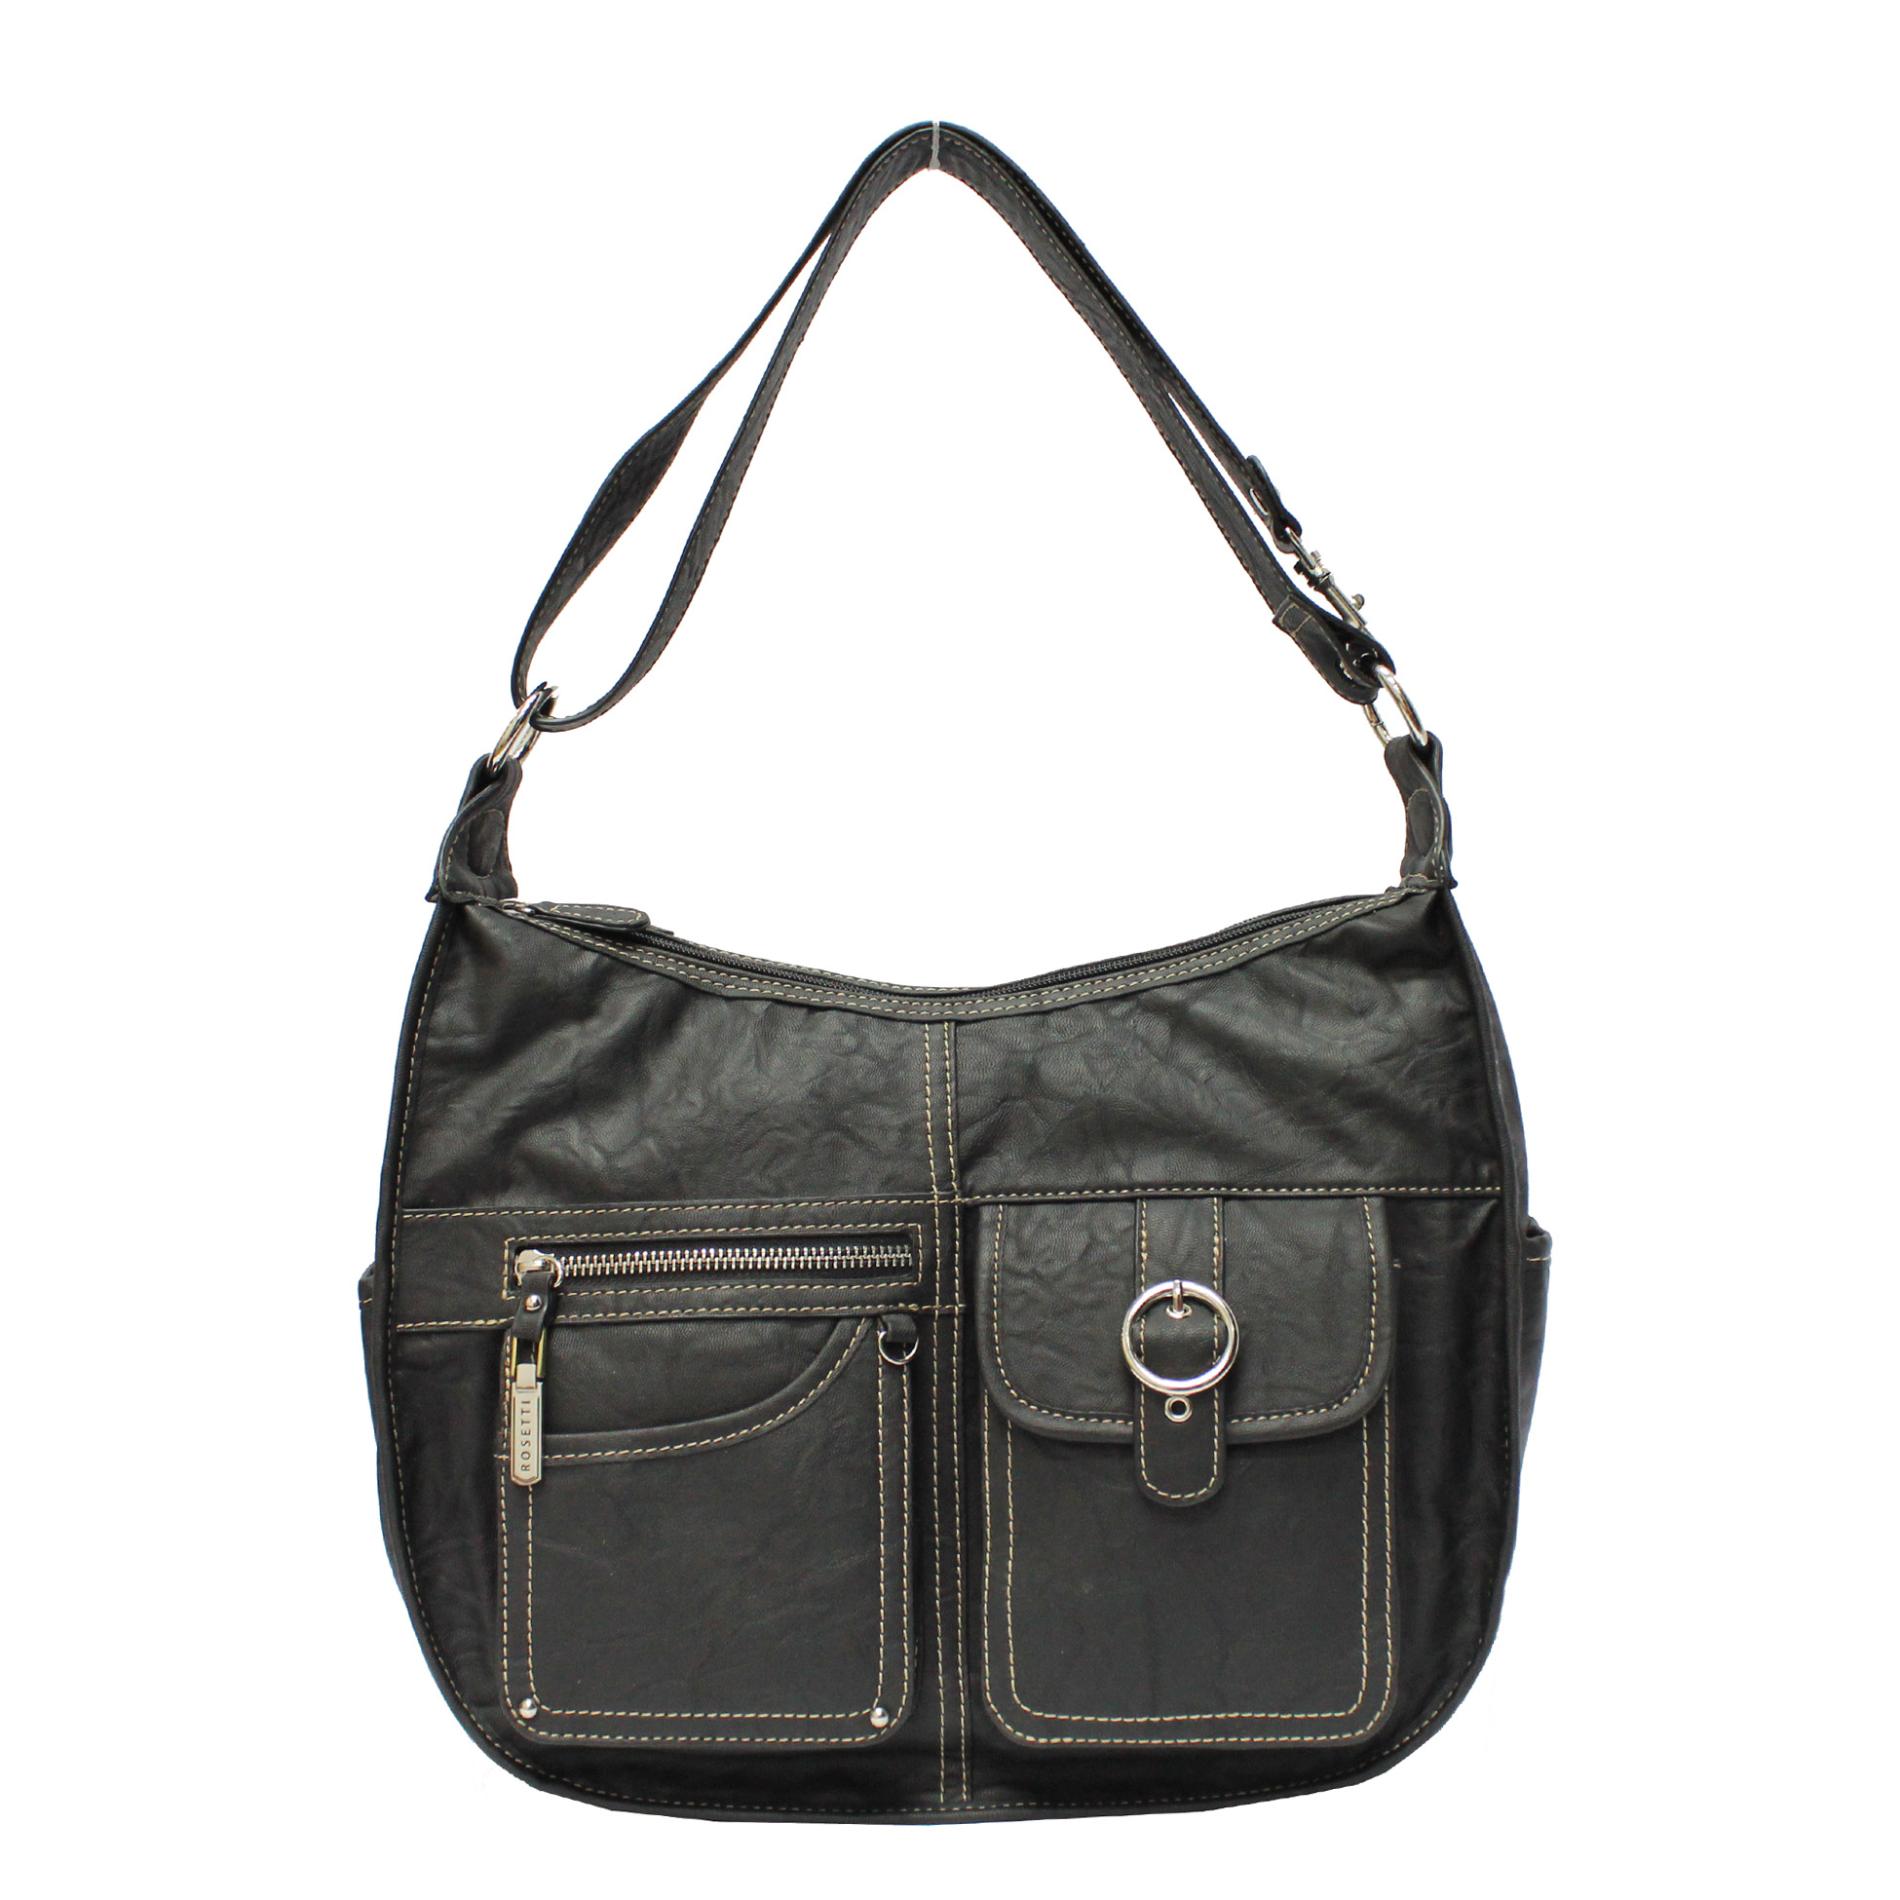 Rosetti Women's Hobo Handbag | Shop Your Way: Online Shopping & Earn ...